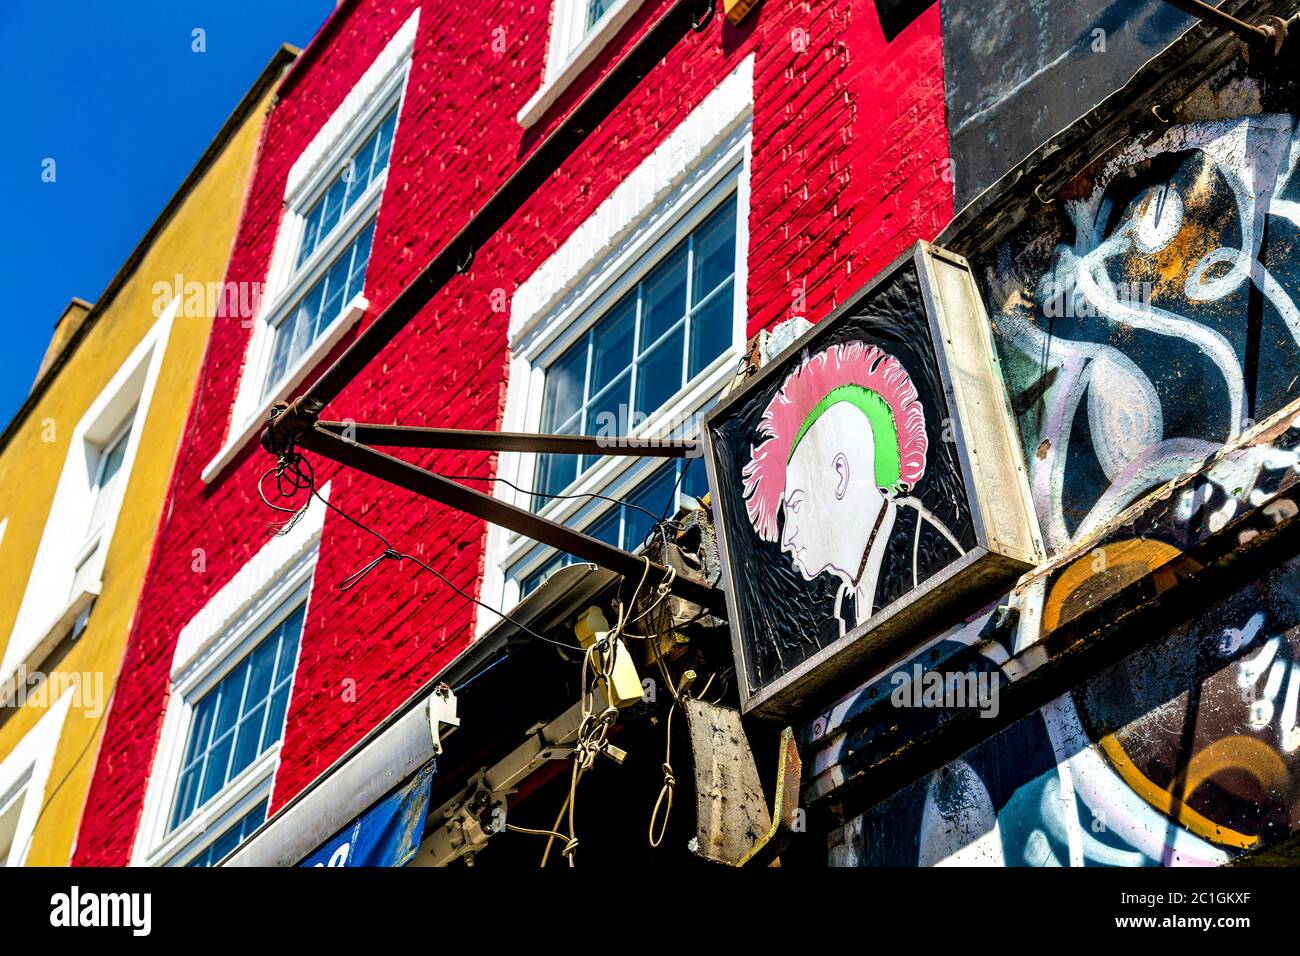 Un cartel con un punk que escudriña un halcón y fachadas de colores de casas a lo largo de Camden High Street, Londres, Reino Unido Foto de stock